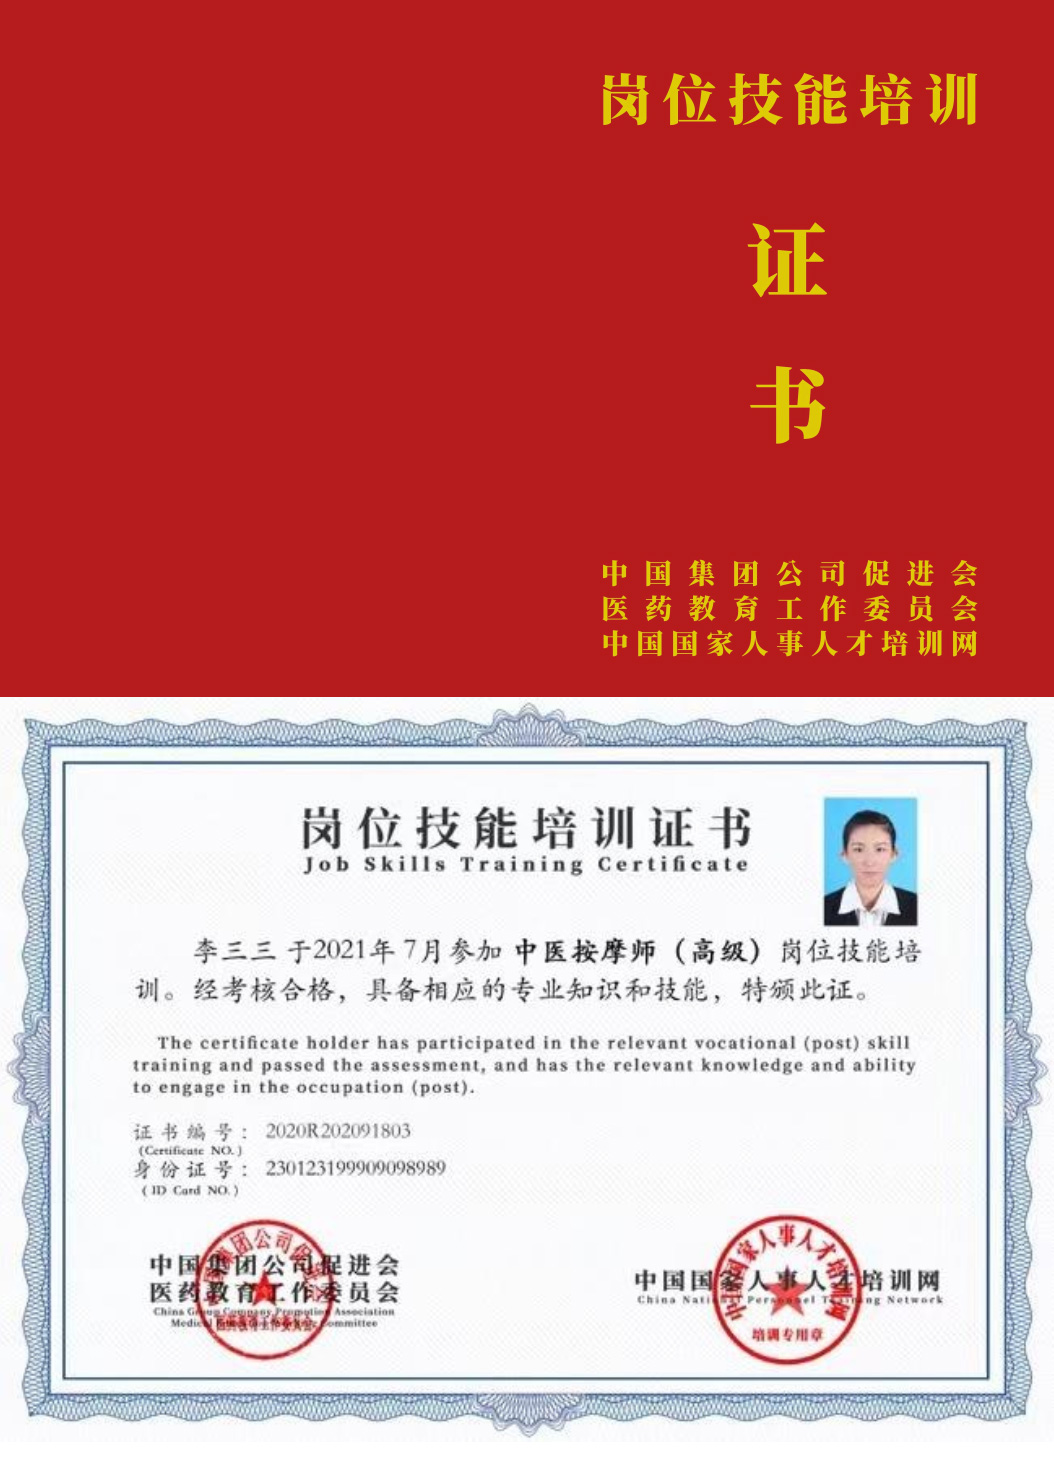 中国国家人事人才培训网 中医催乳师 岗位技能培训证书